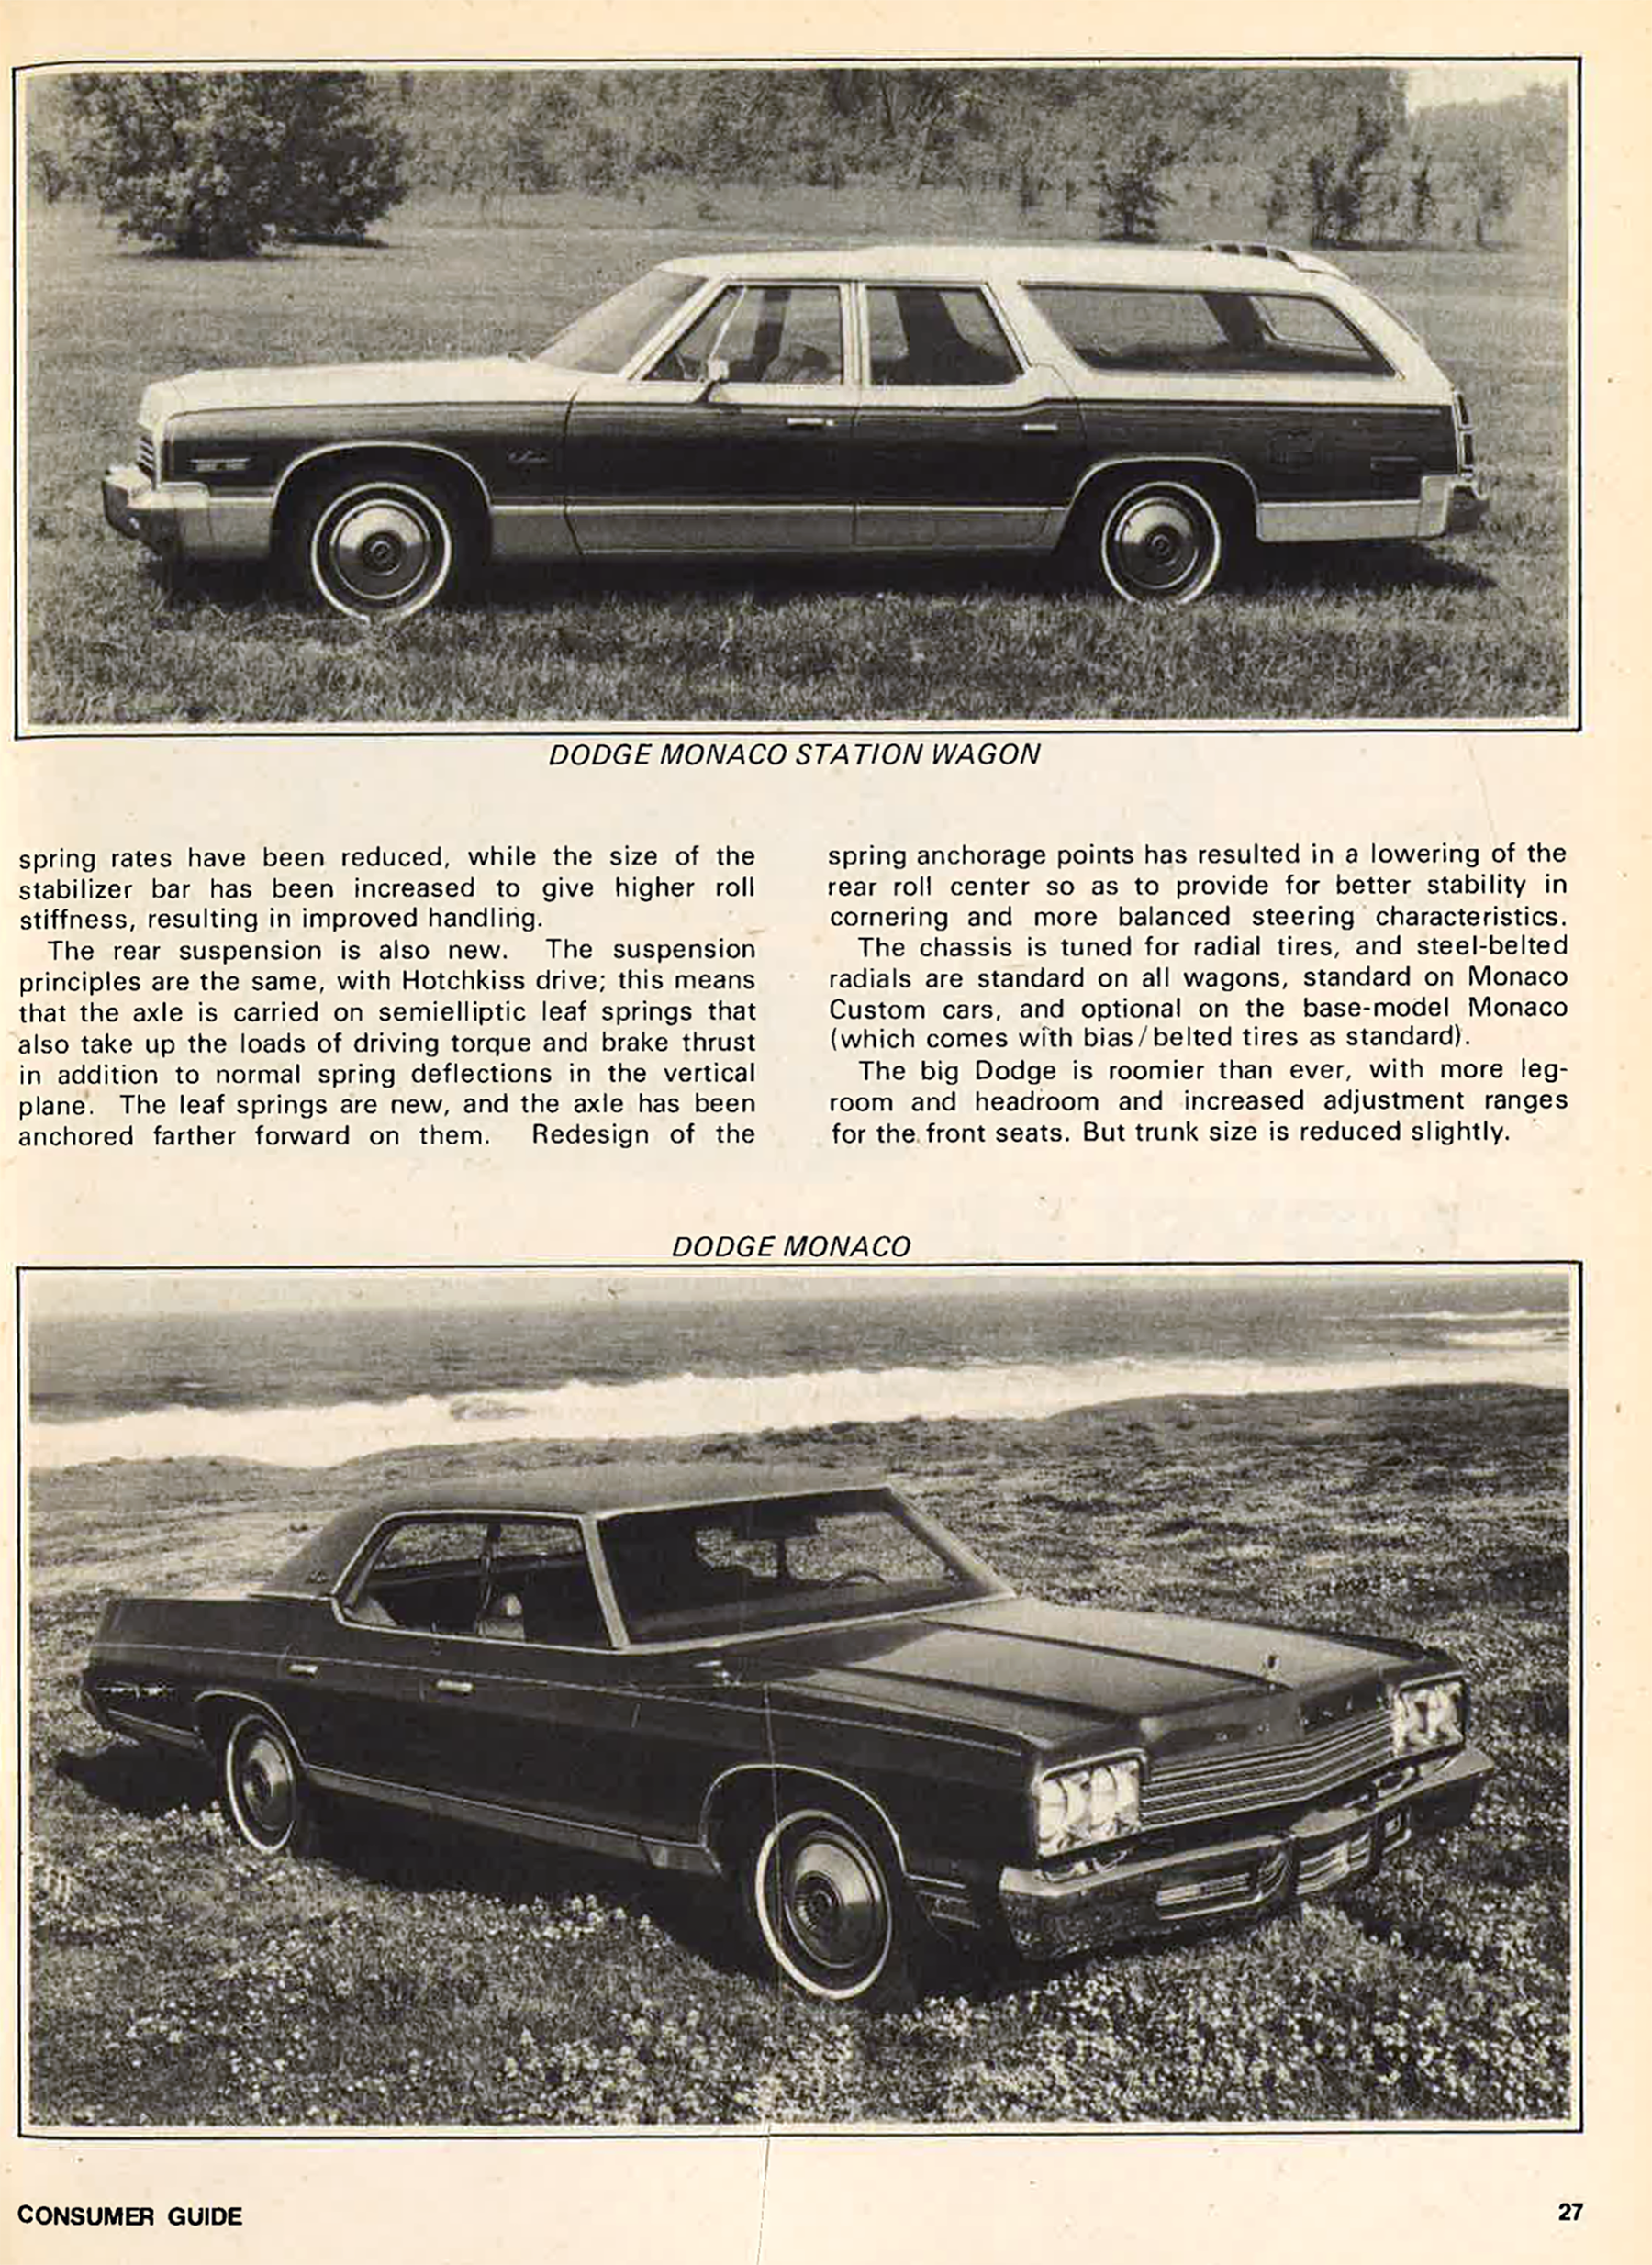 1974 Dodge Monaco Review